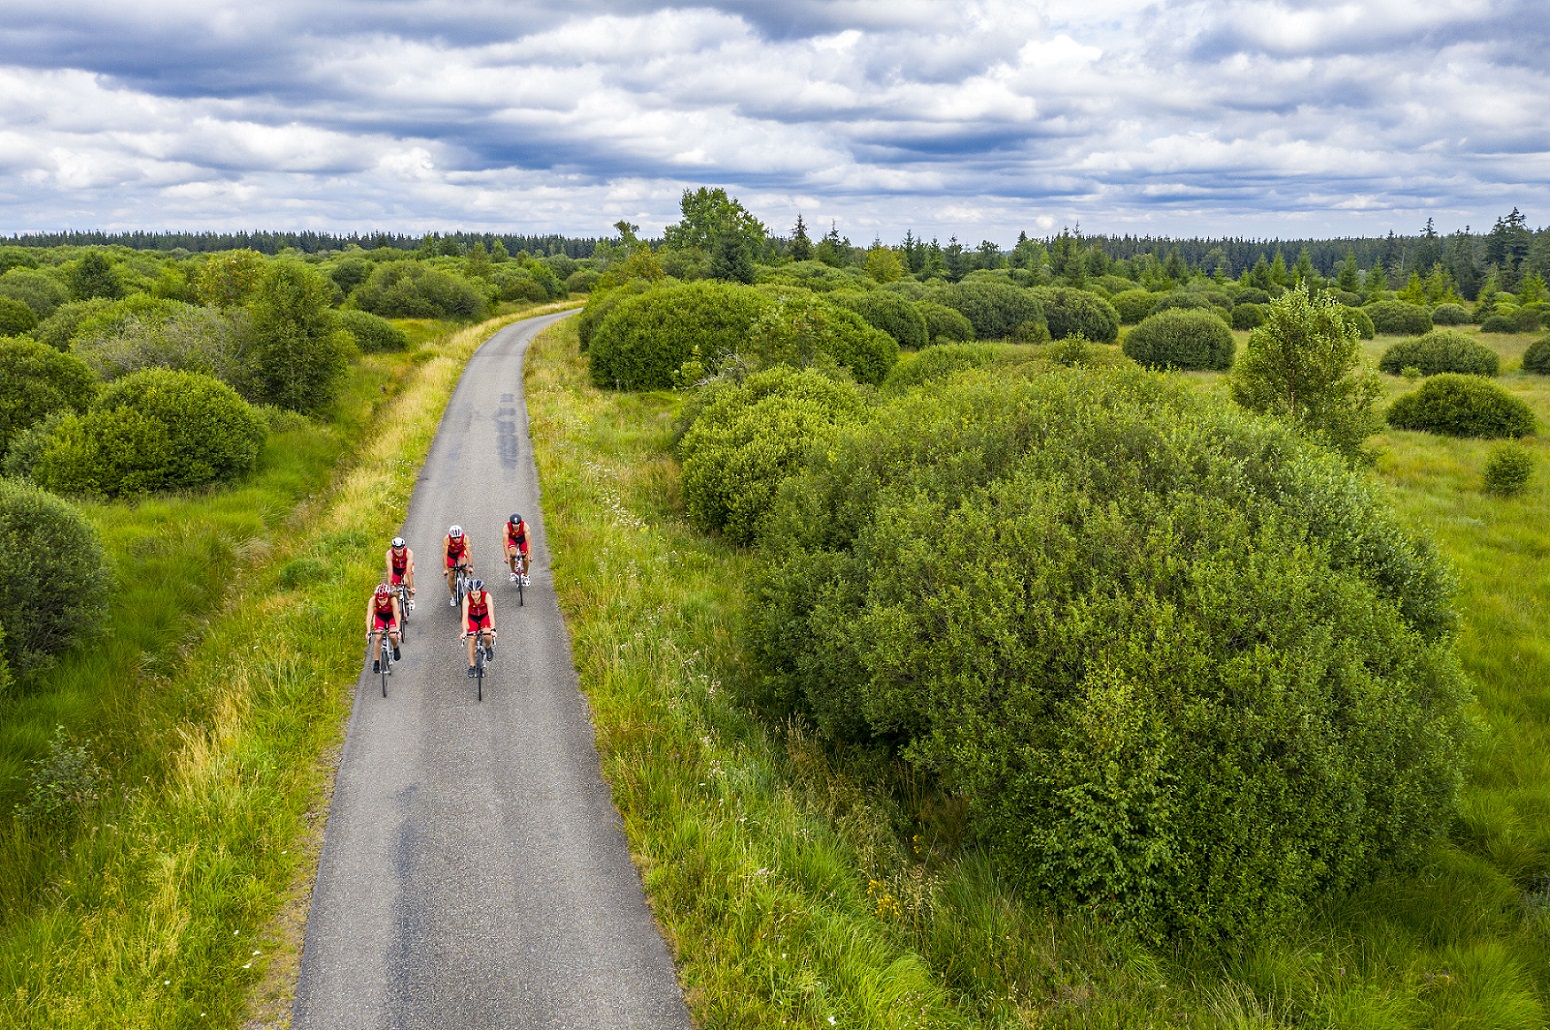 Landschaftsaufnahme des hohen Venn. Auf einem asphaltierten Weg sind die fünf Triathleten auf ihren Rennrädern beim Training zu sehen.